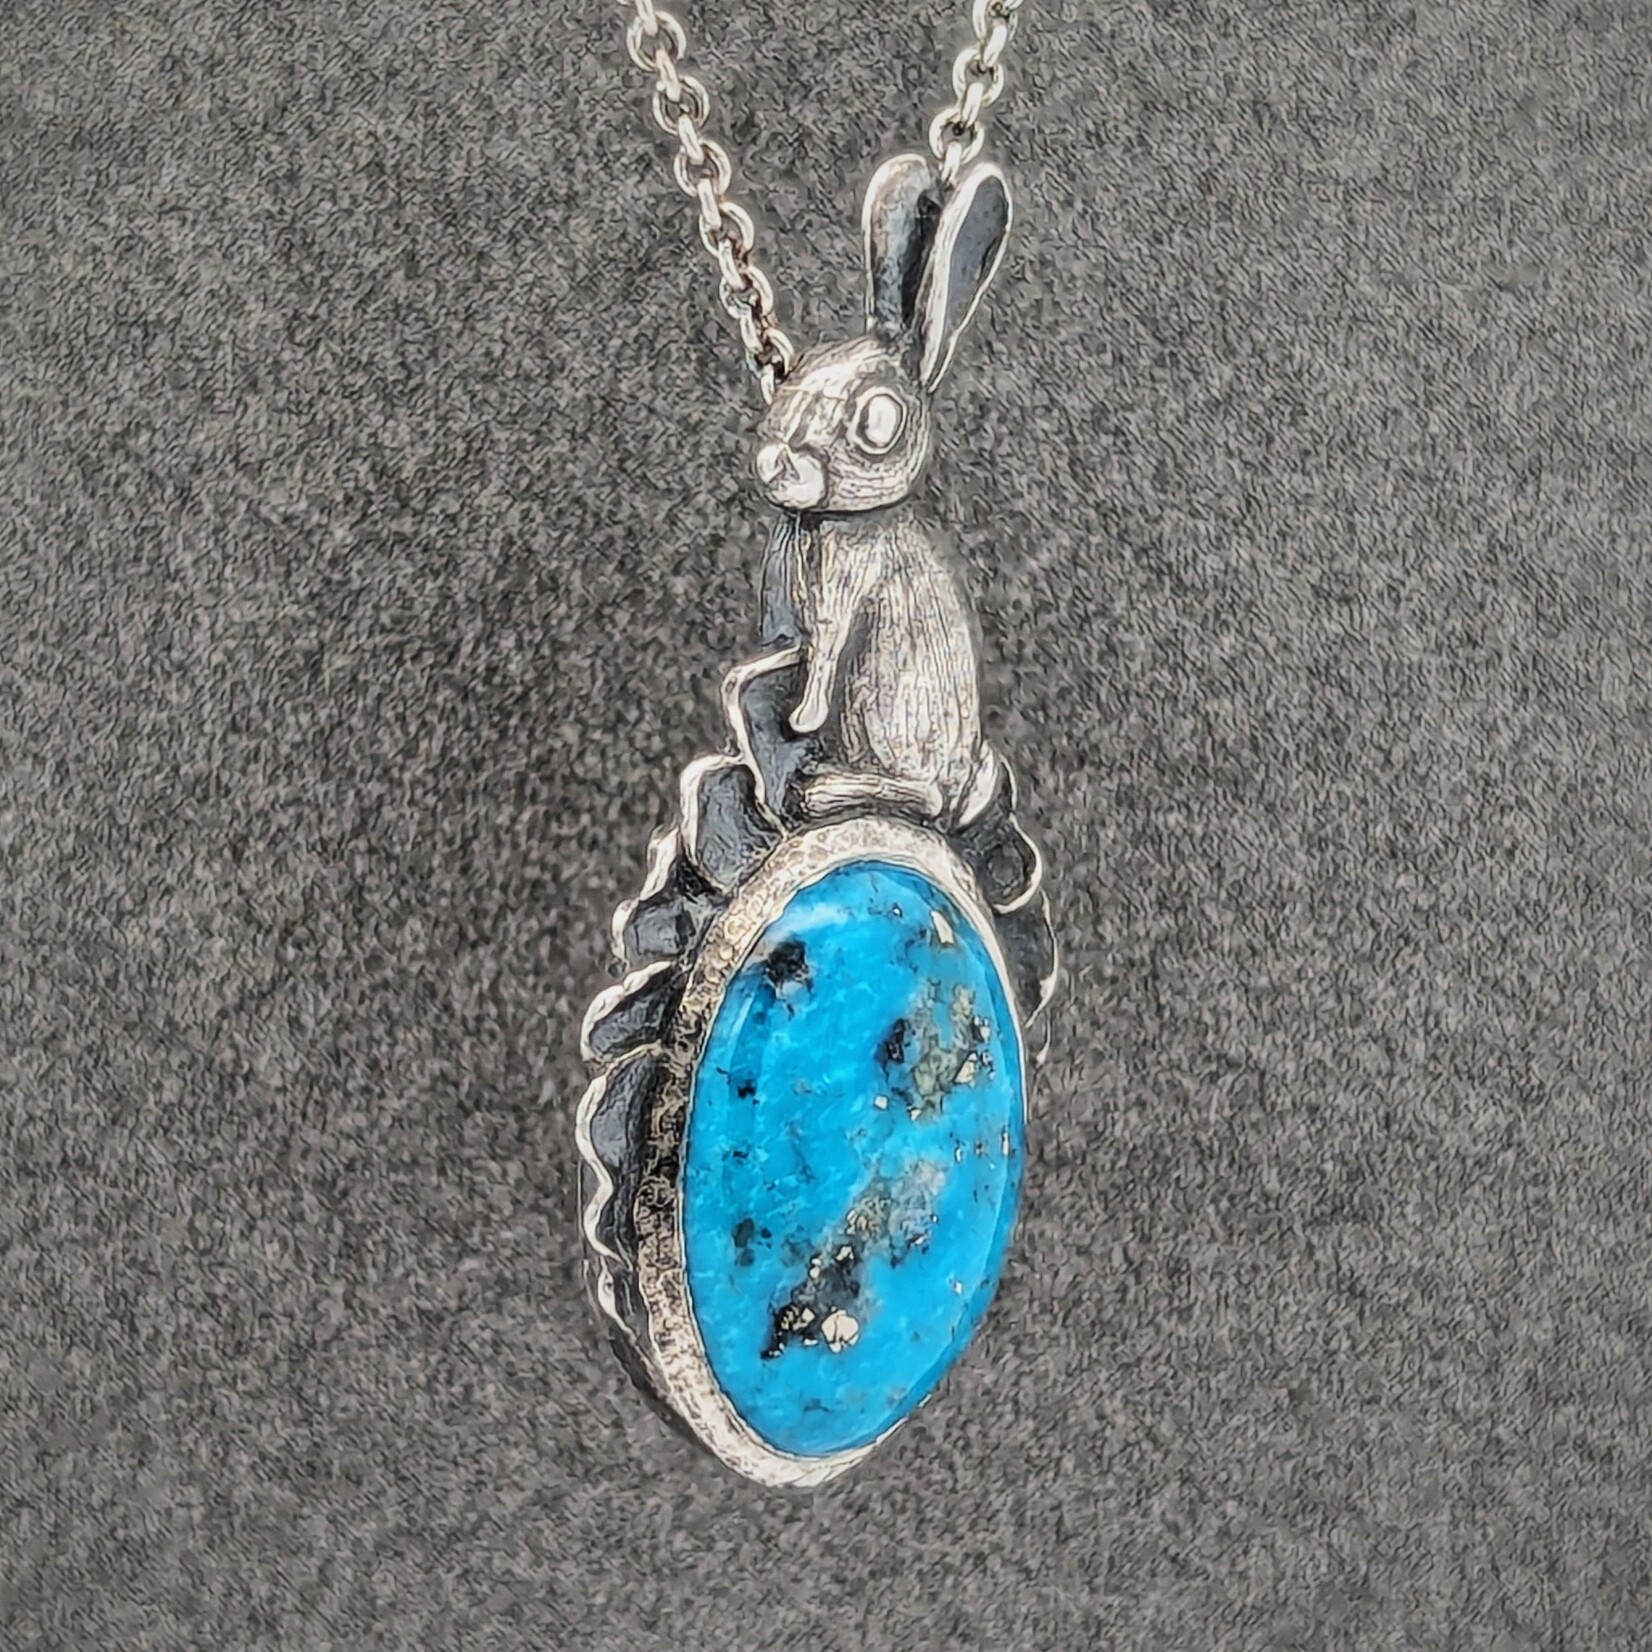 Carrie Nunes Jewelry Rabbit Pendant w/ Turquoise